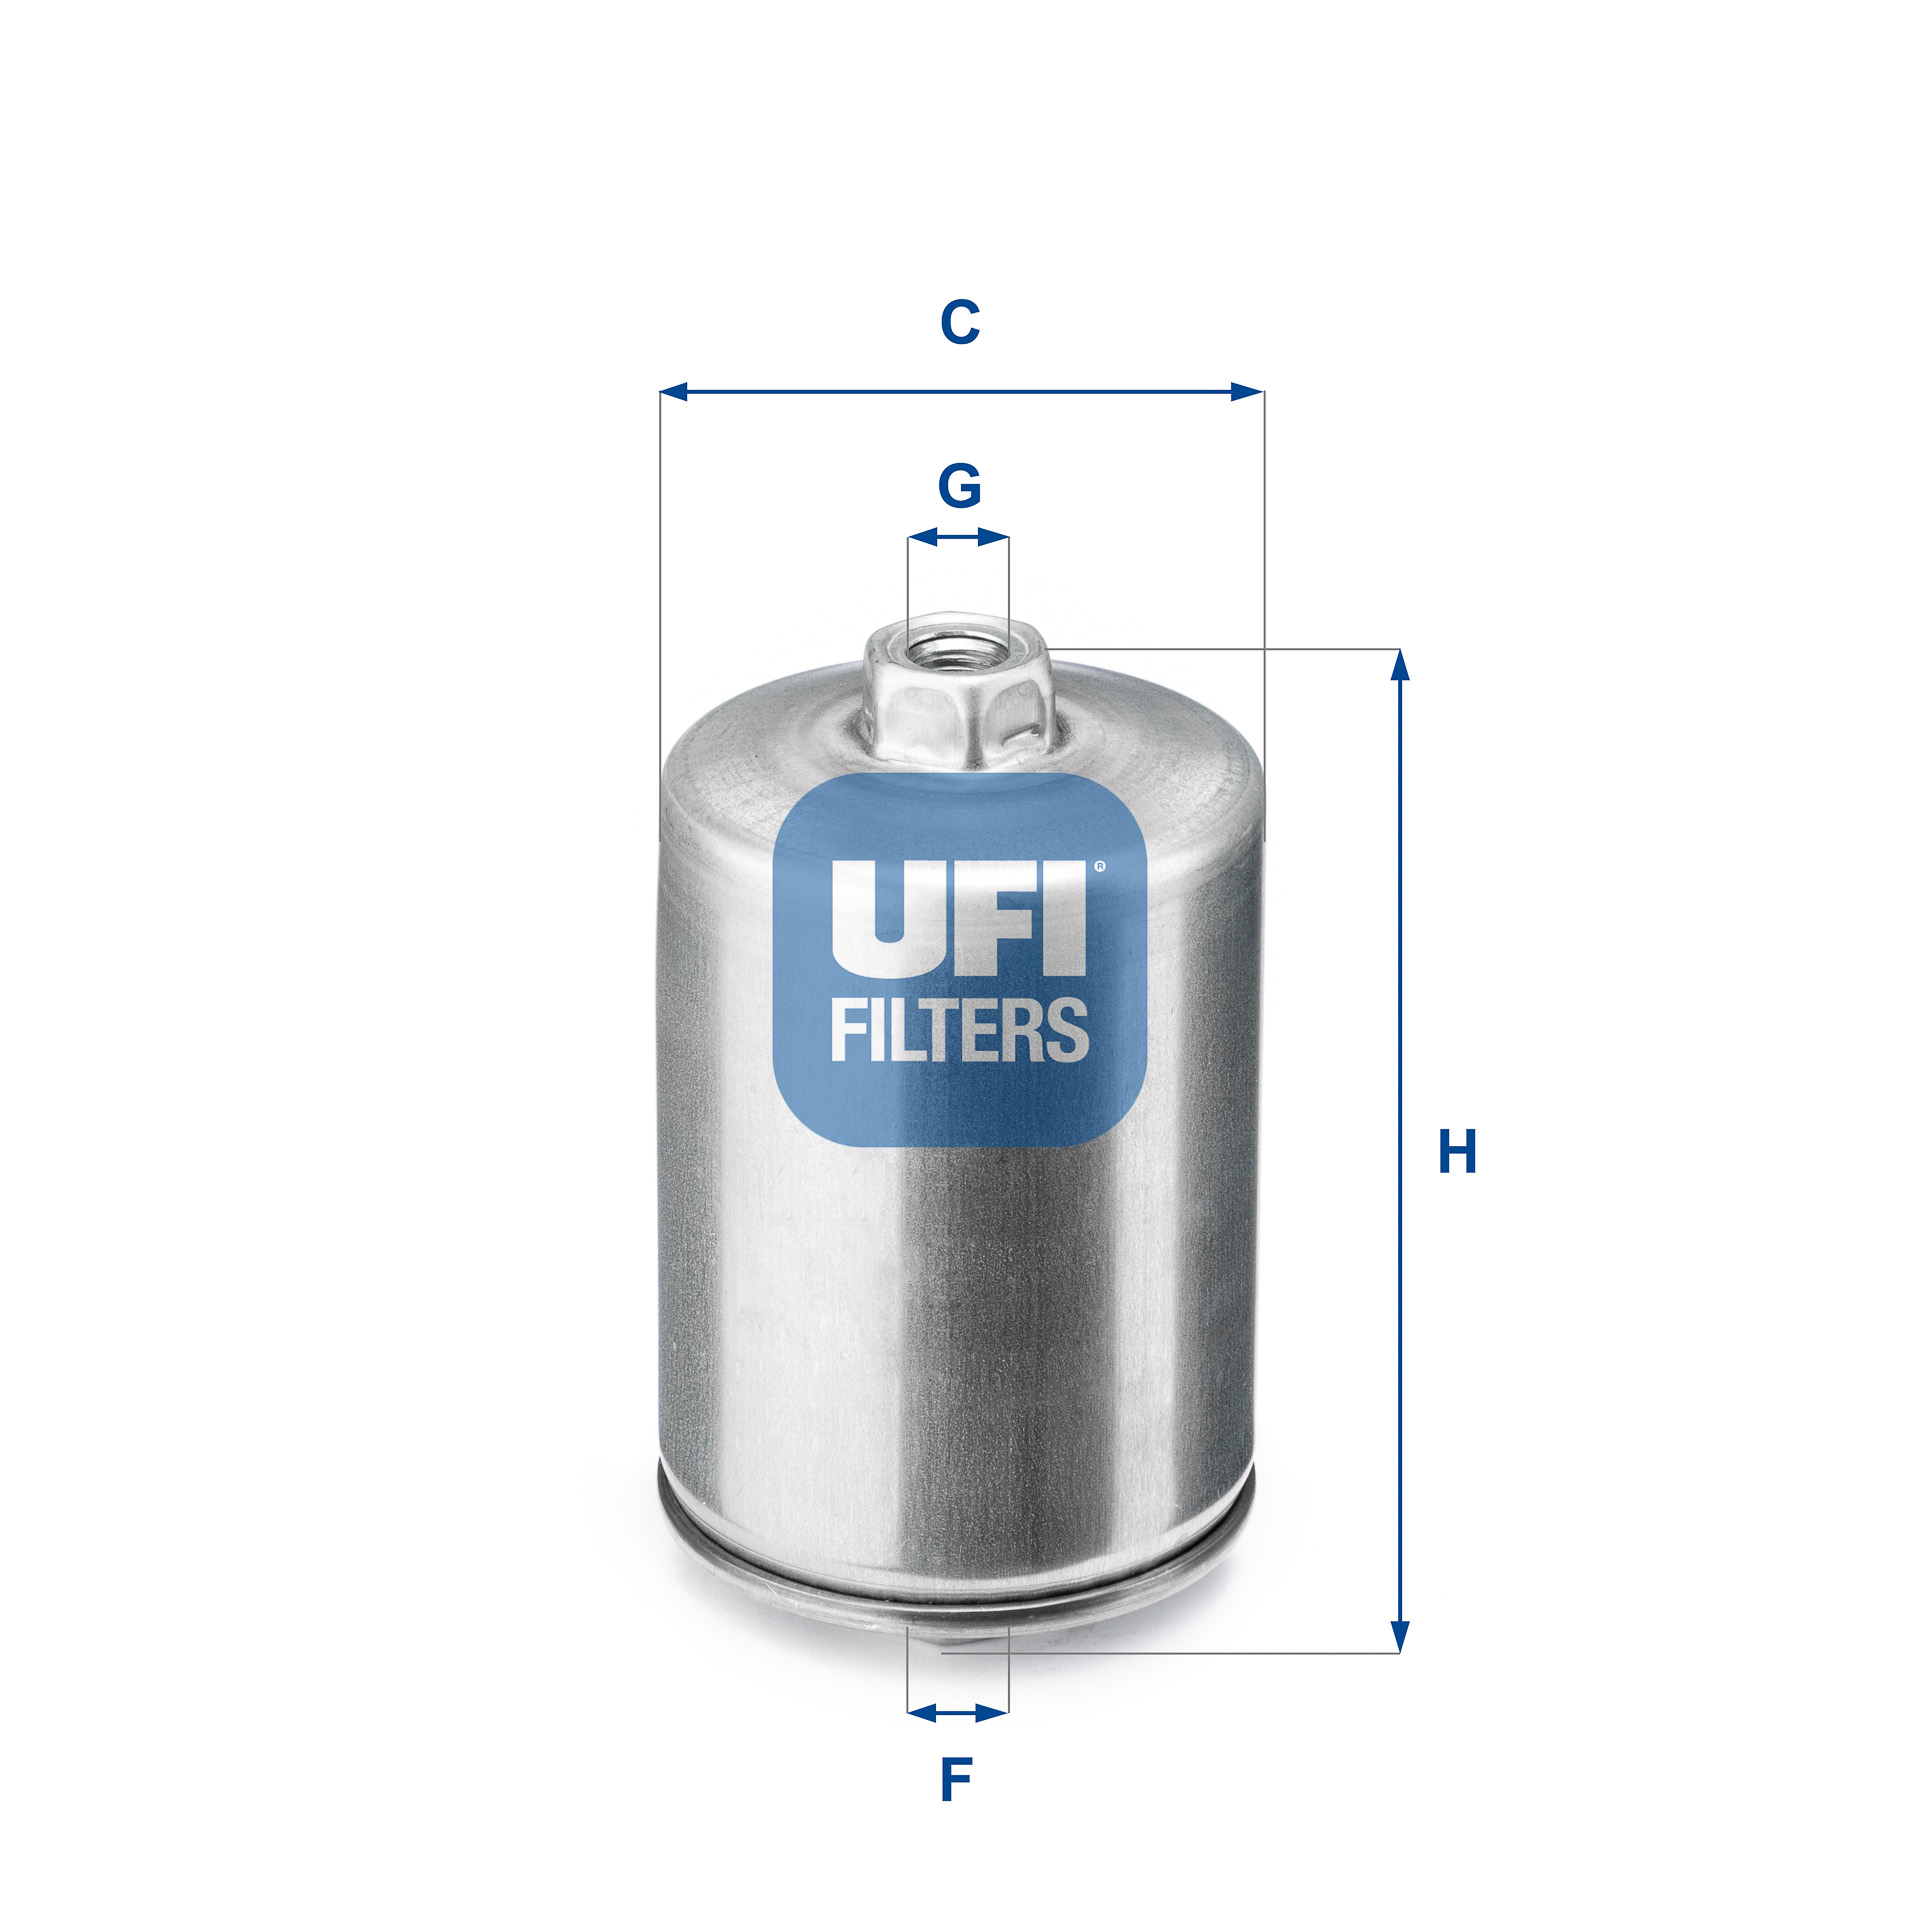 Топливный фильтр, UFI, 31.748.00